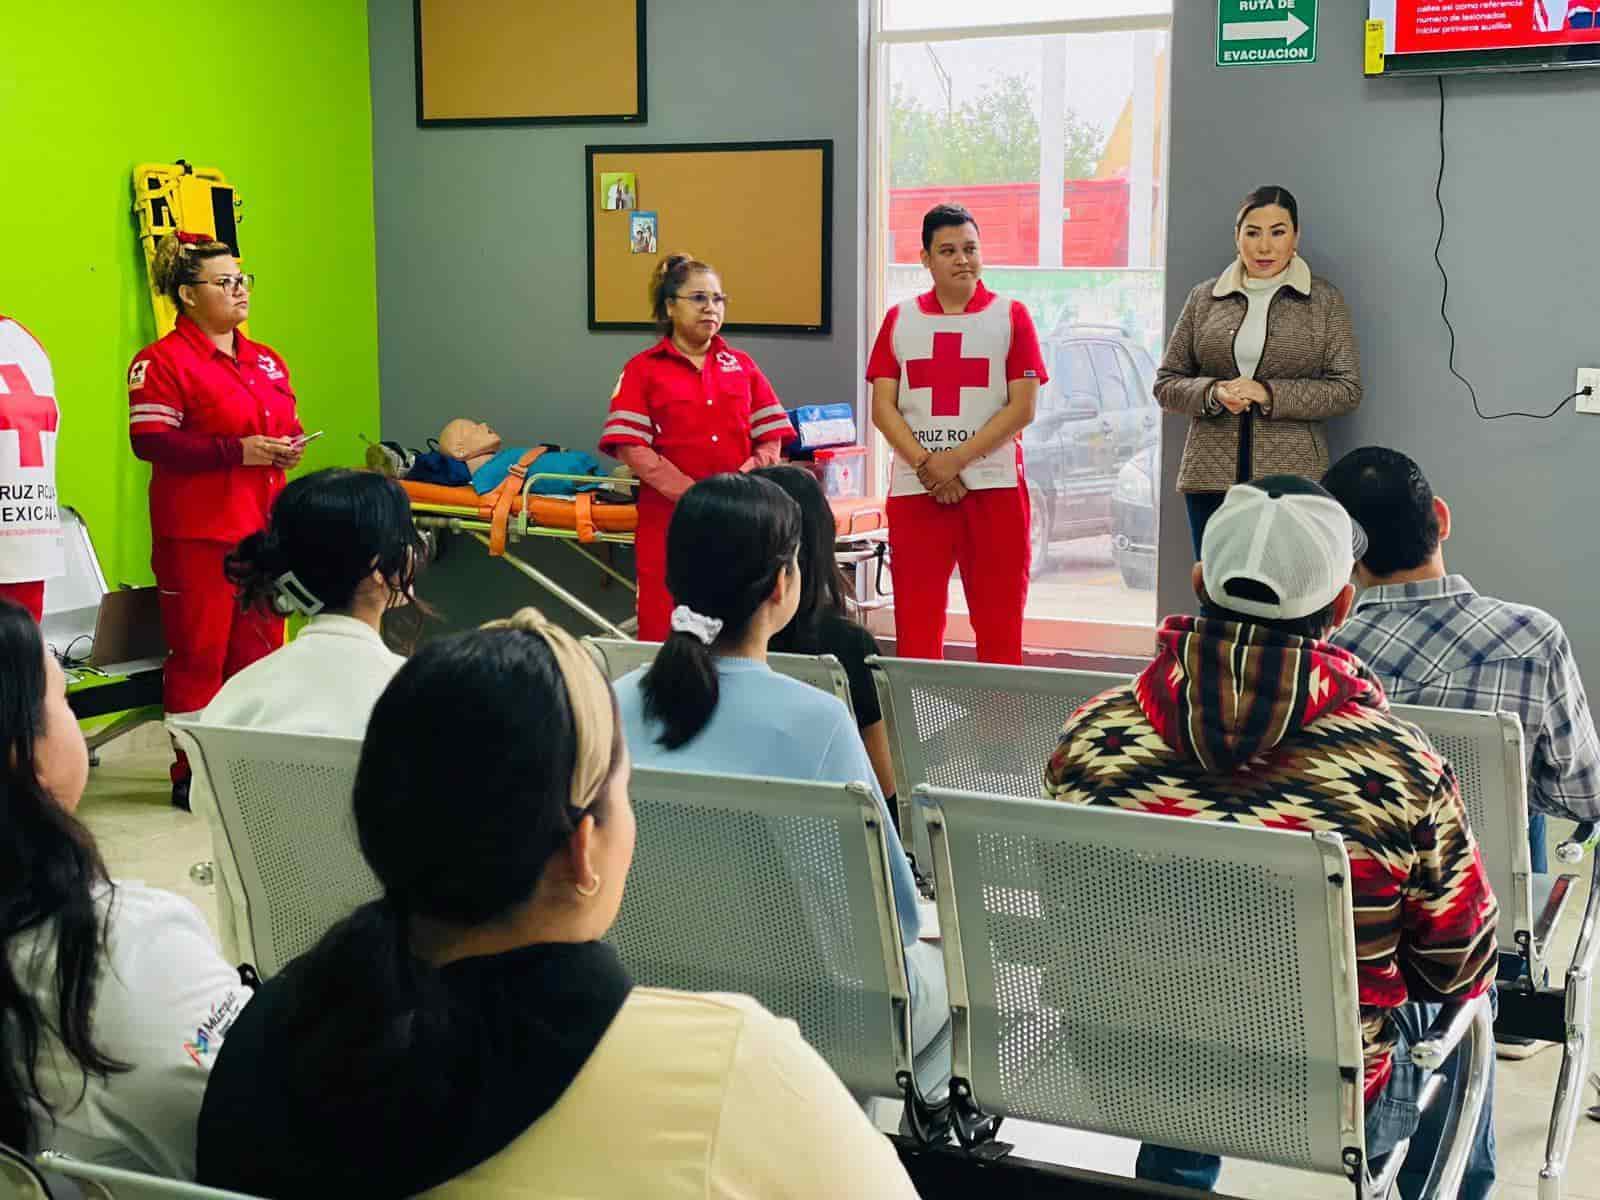 Imparten curso de primeros auxilios en Clínica San Isidro